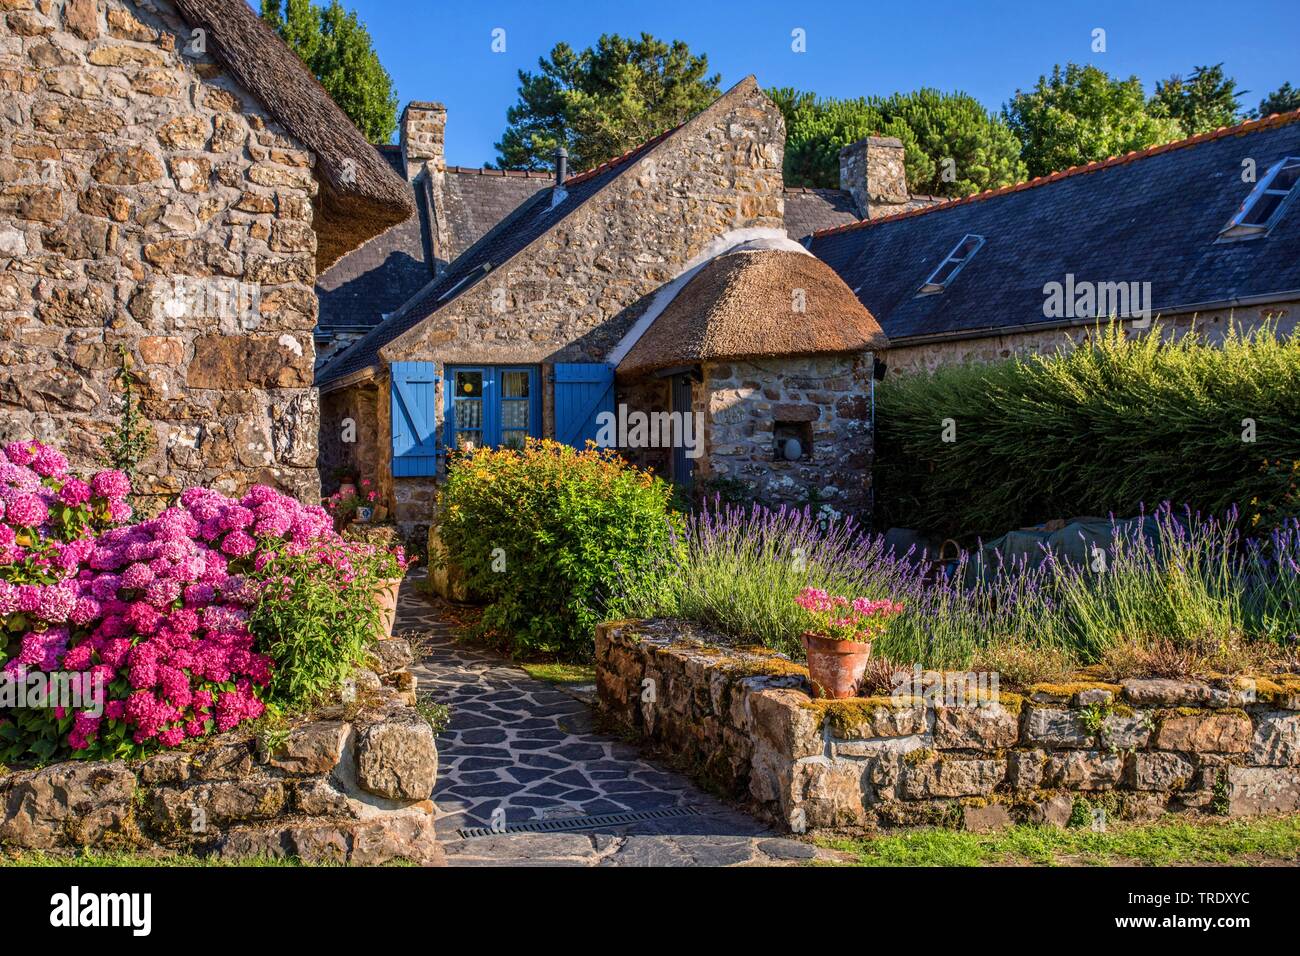 Hortensia jardin dentelle, cap hortensia (Hydrangea macrophylla), maisons en pierre naturelle typiquement breton avec la floraison des hortensias, France, Bretagne Banque D'Images